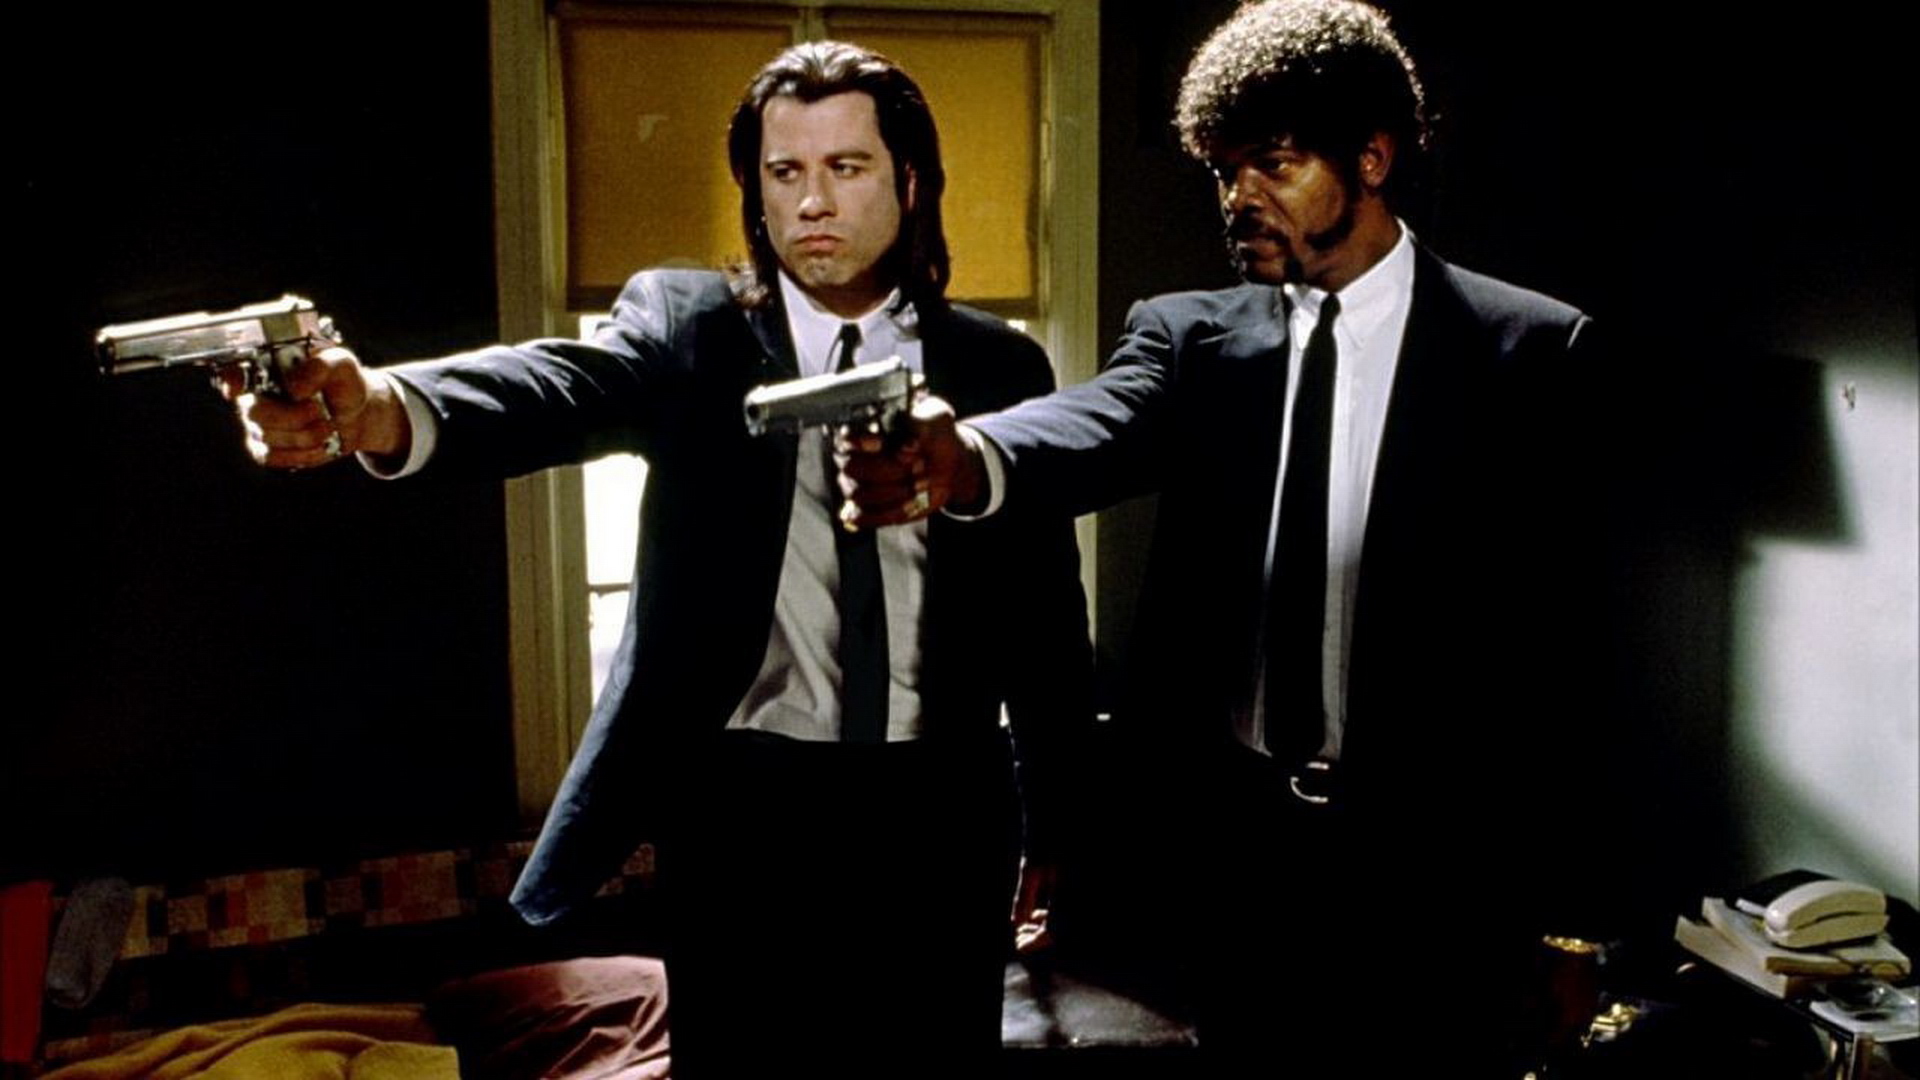 Pulp Fiction: La literatura de tapa blanda que inspiró a Quentin Tarantino